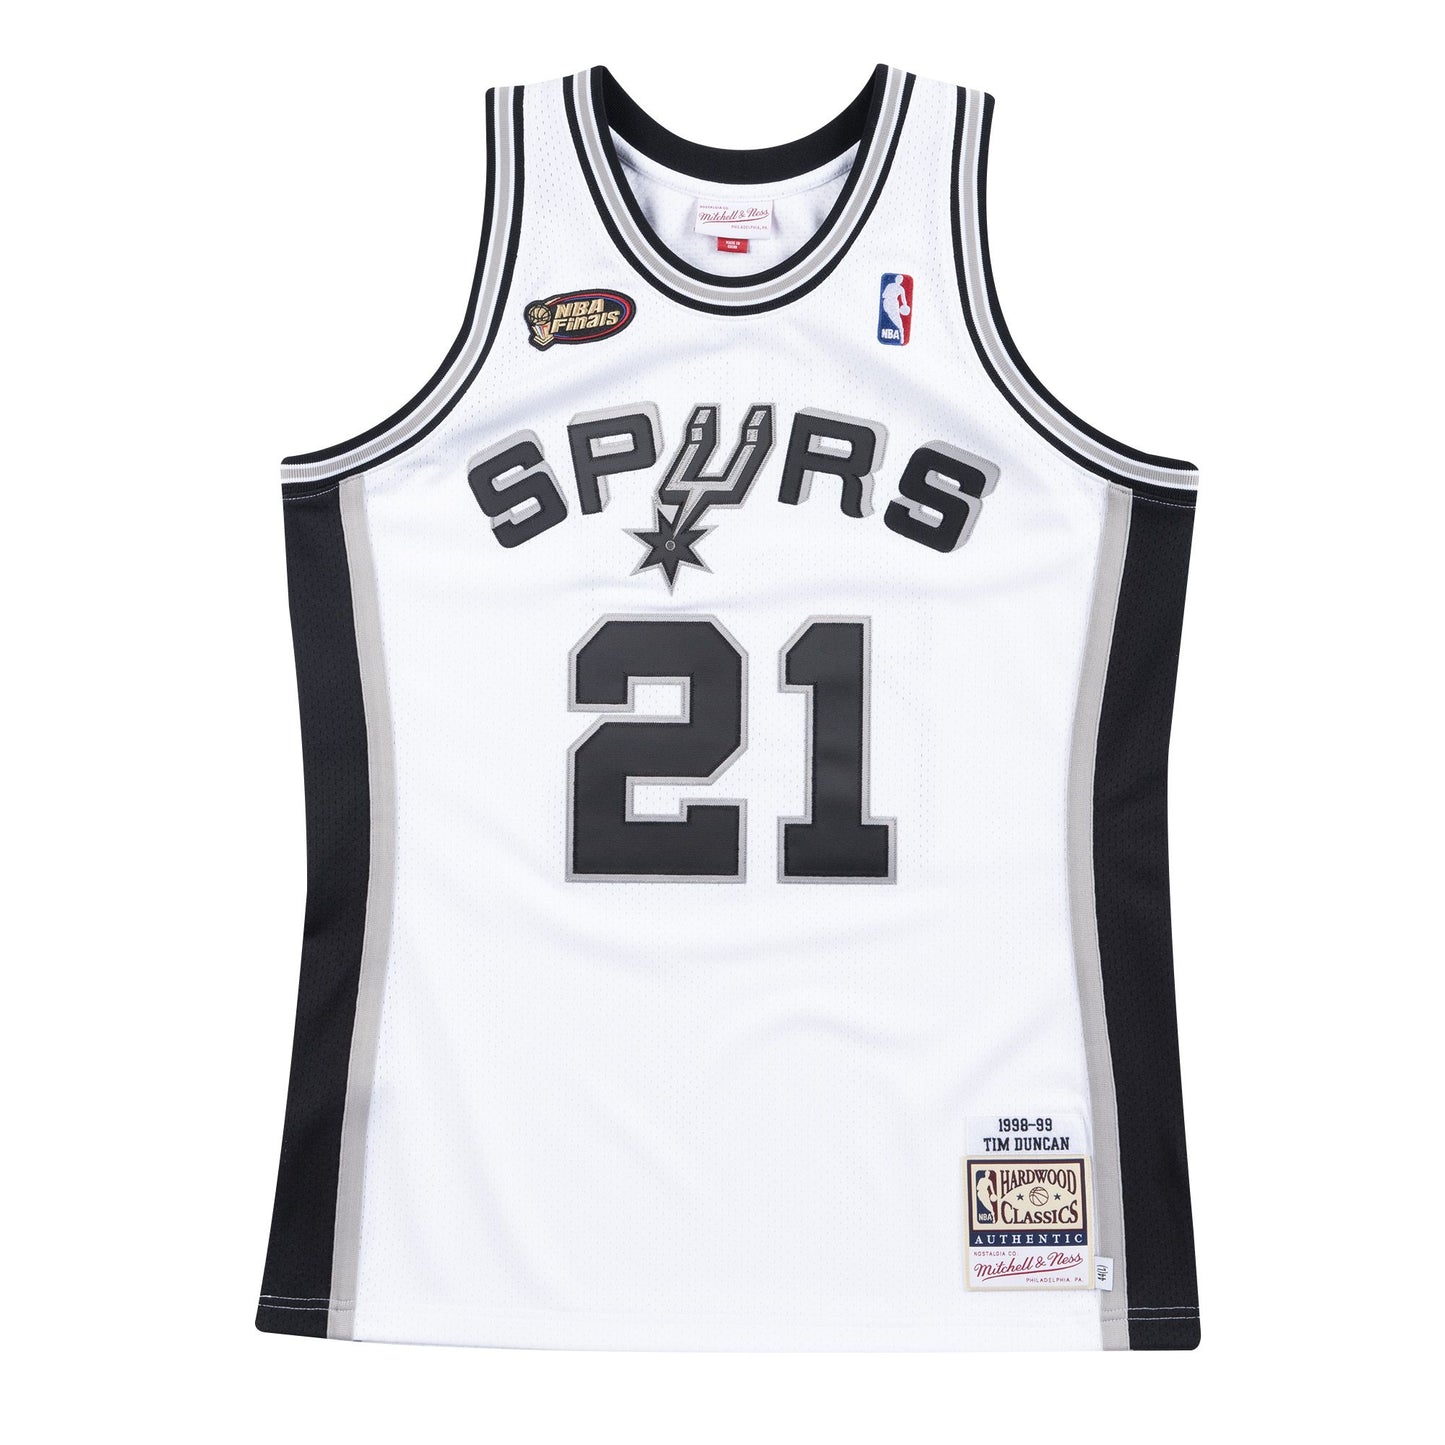 Authentic Jersey San Antonio Spurs Home Finals1998-99 Tim Duncan